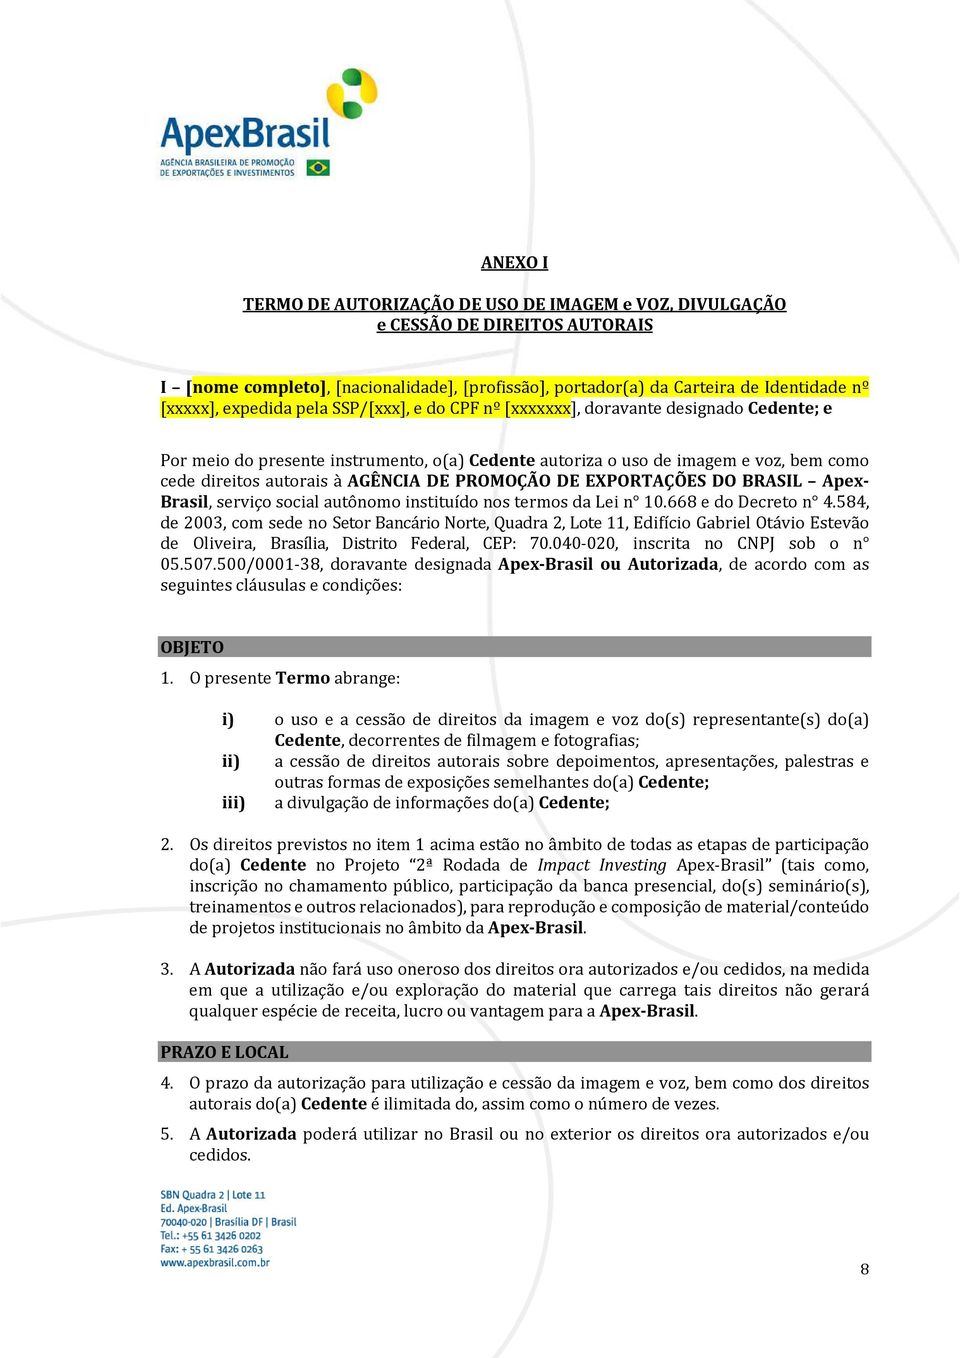 DE PROMOÇÃO DE EXPORTAÇÕES DO BRASIL Apex- Brasil, serviço social autônomo instituído nos termos da Lei n 10.668 e do Decreto n 4.